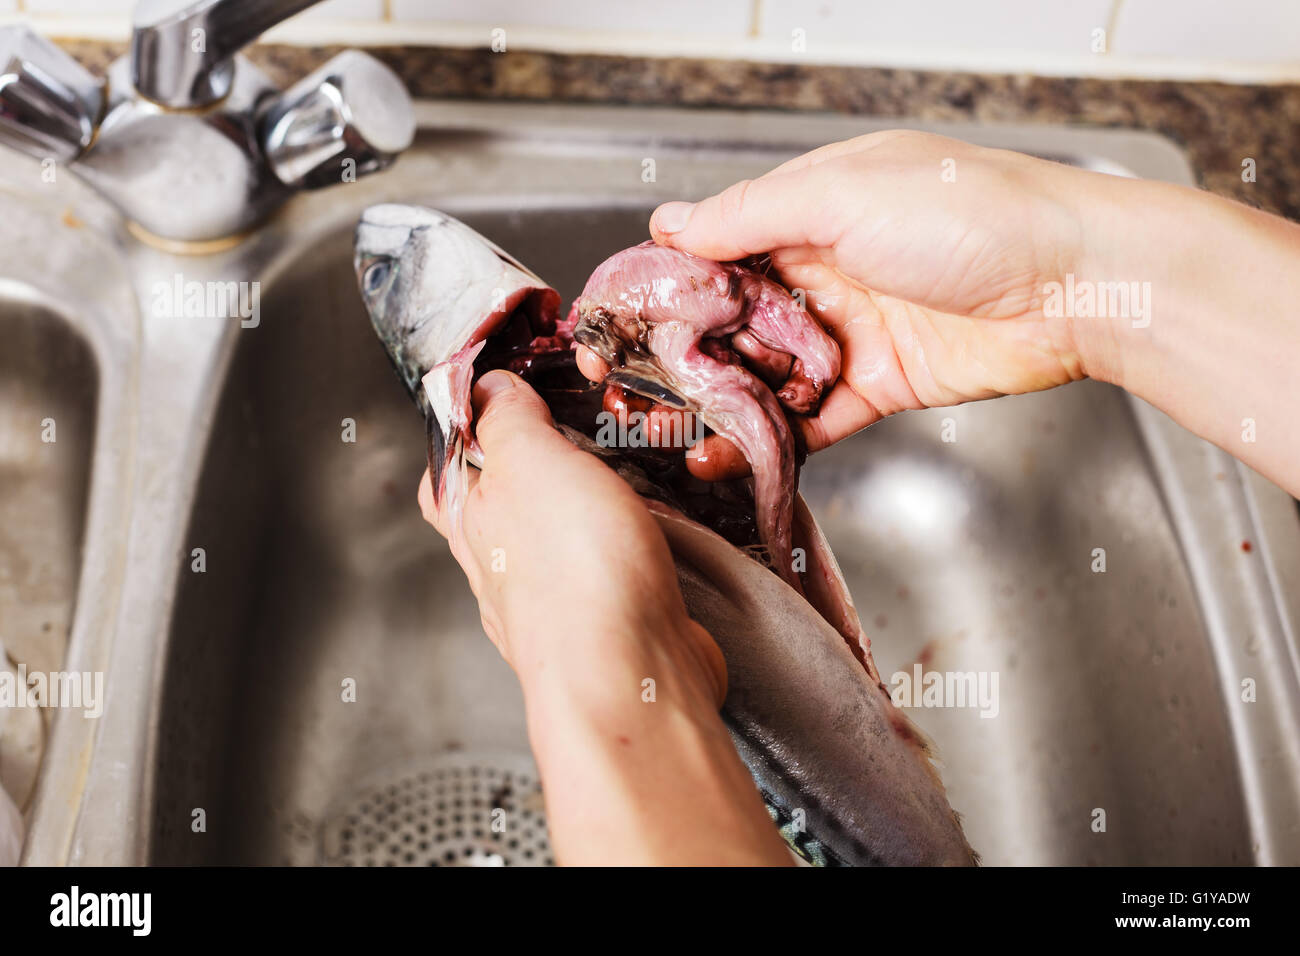 Gros plan sur les mains d'une jeune femme qu'elle est l'éviscération et le nettoyage d'un poisson dans la cuisine Banque D'Images